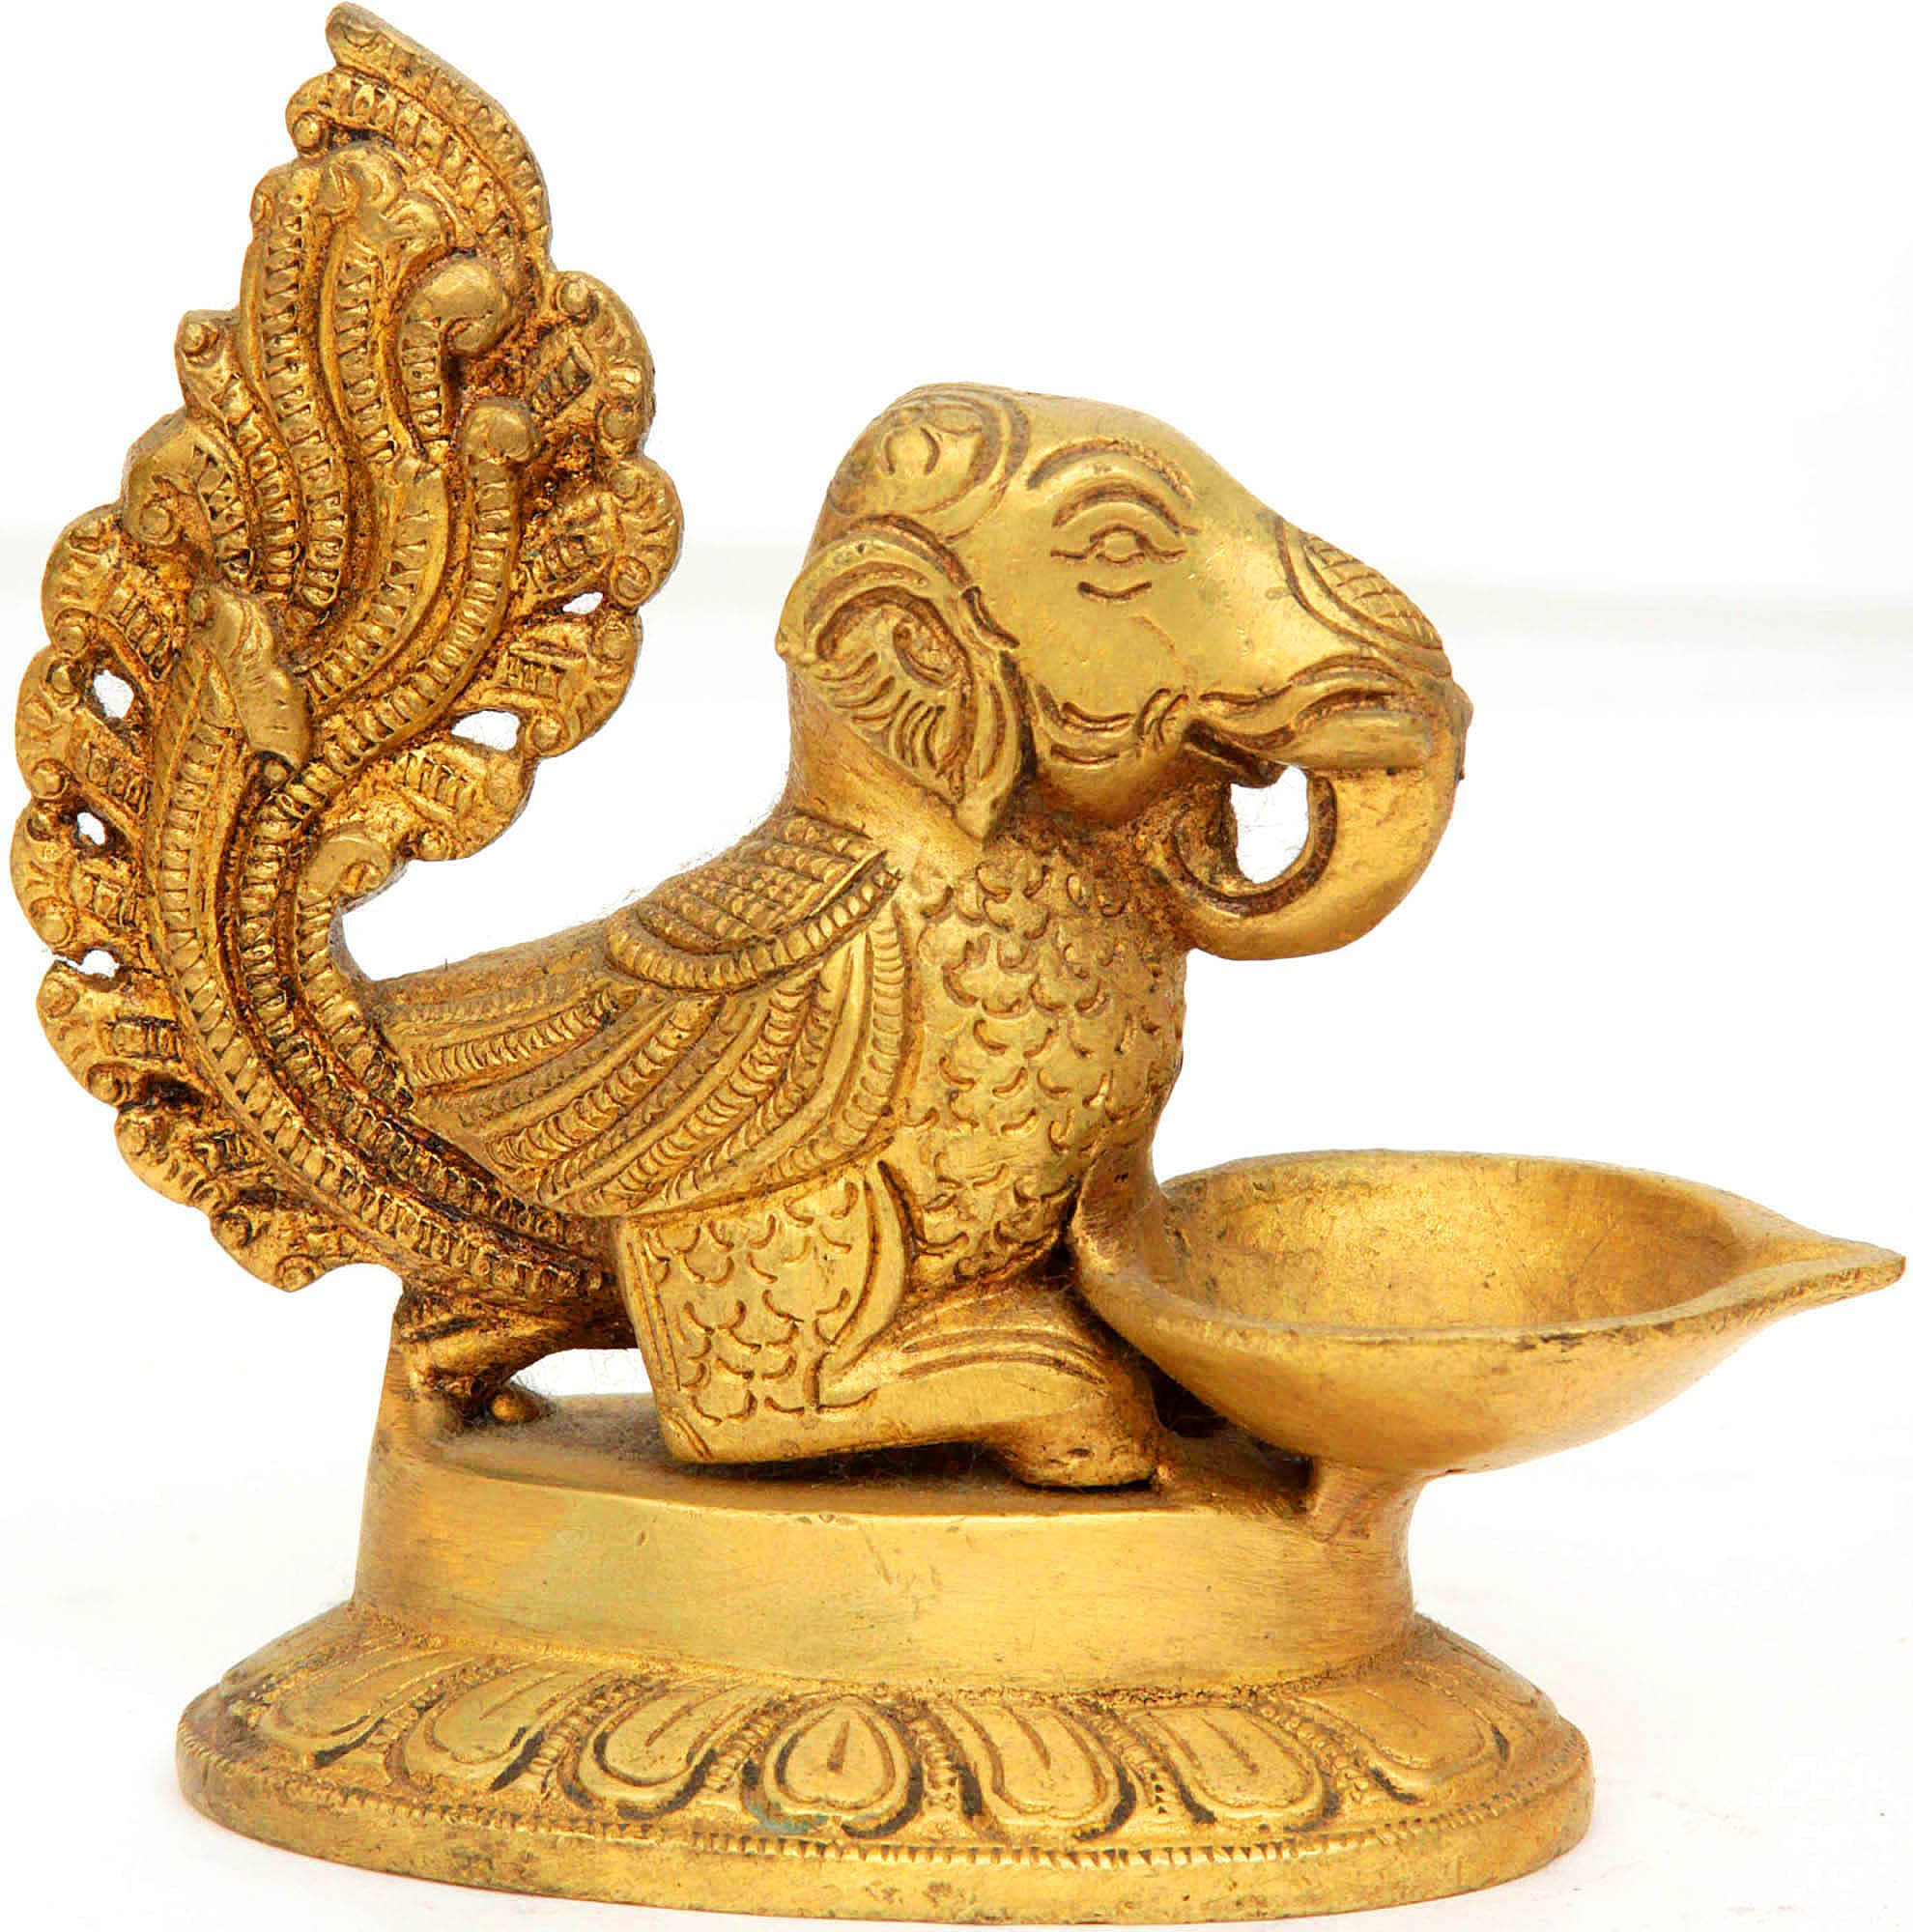 Elephant-Headed Mythical Bird Lamp | Exotic India Art